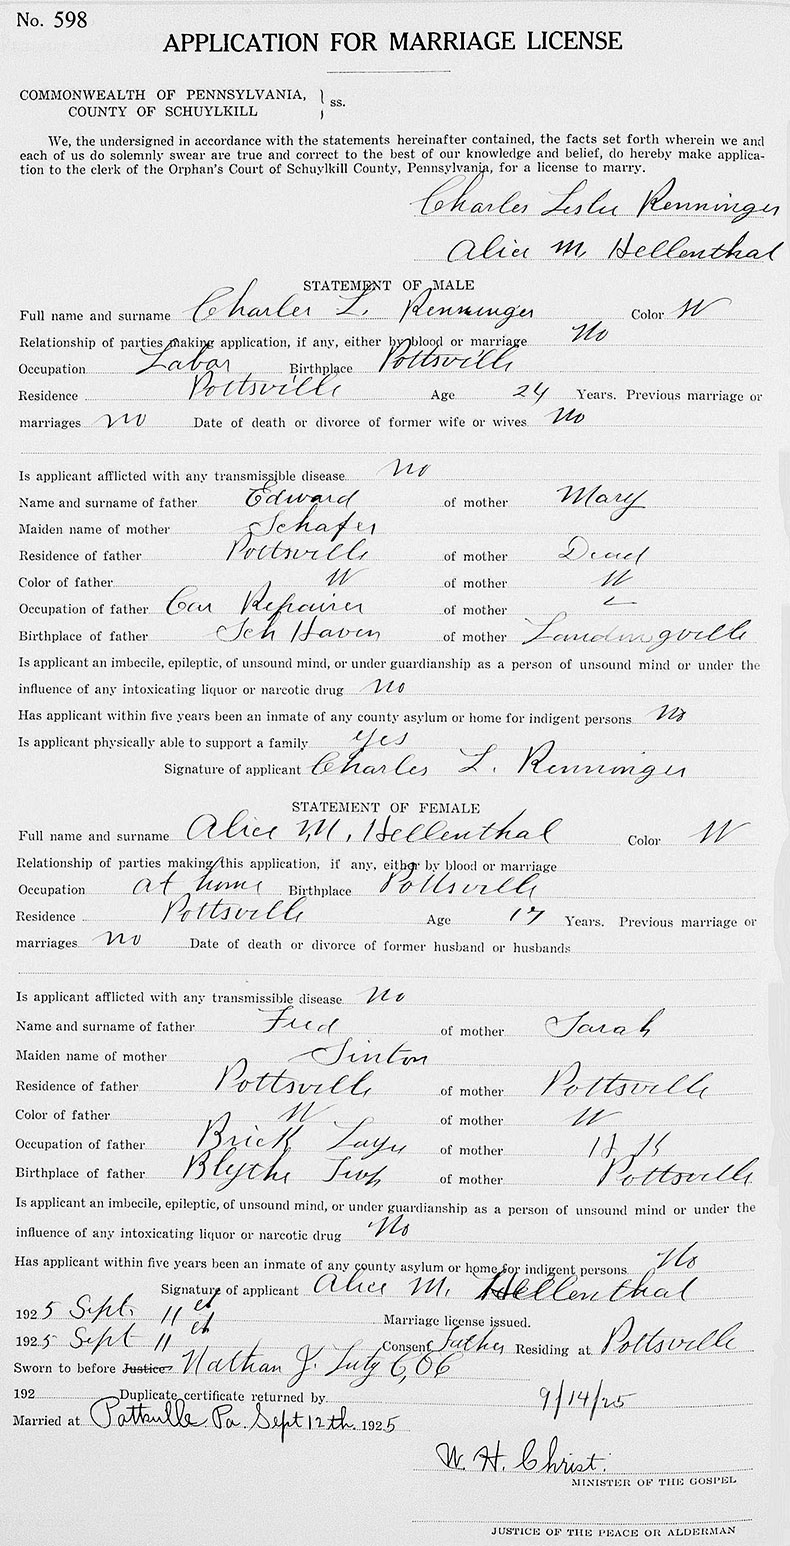 Marriage License of Charles Leslie Renninger and Alice M. Hellenthal - 12 September 1925